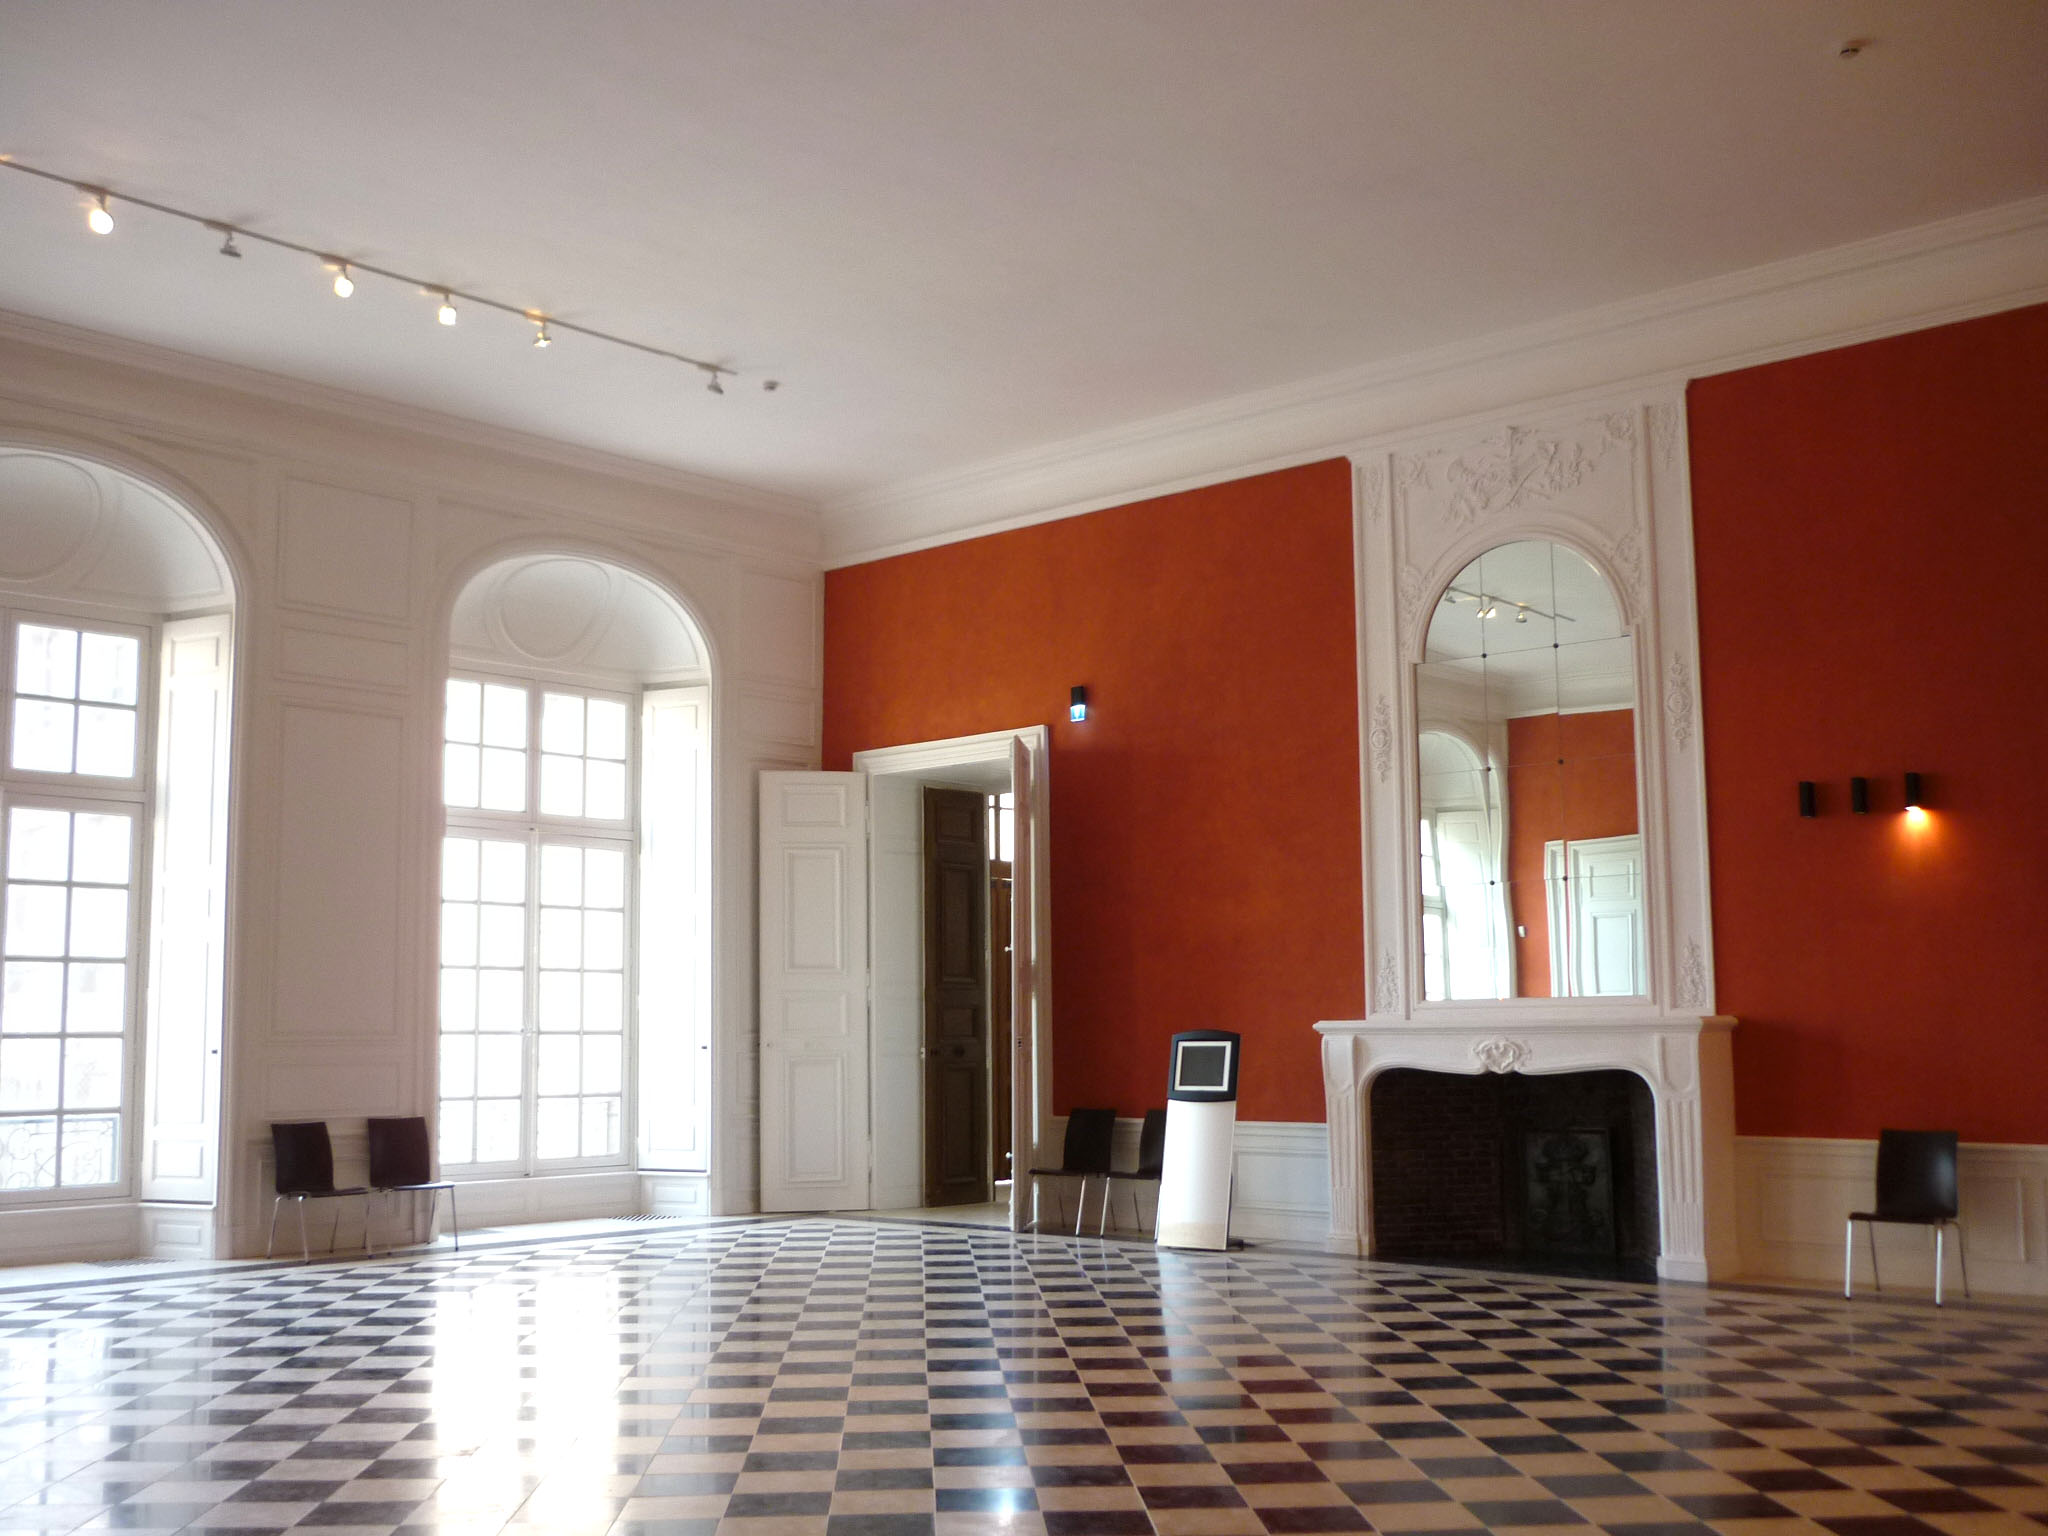 Agence Caillault ACMH – Palais ducal – Luneville – Salle de la Livrée restaurée